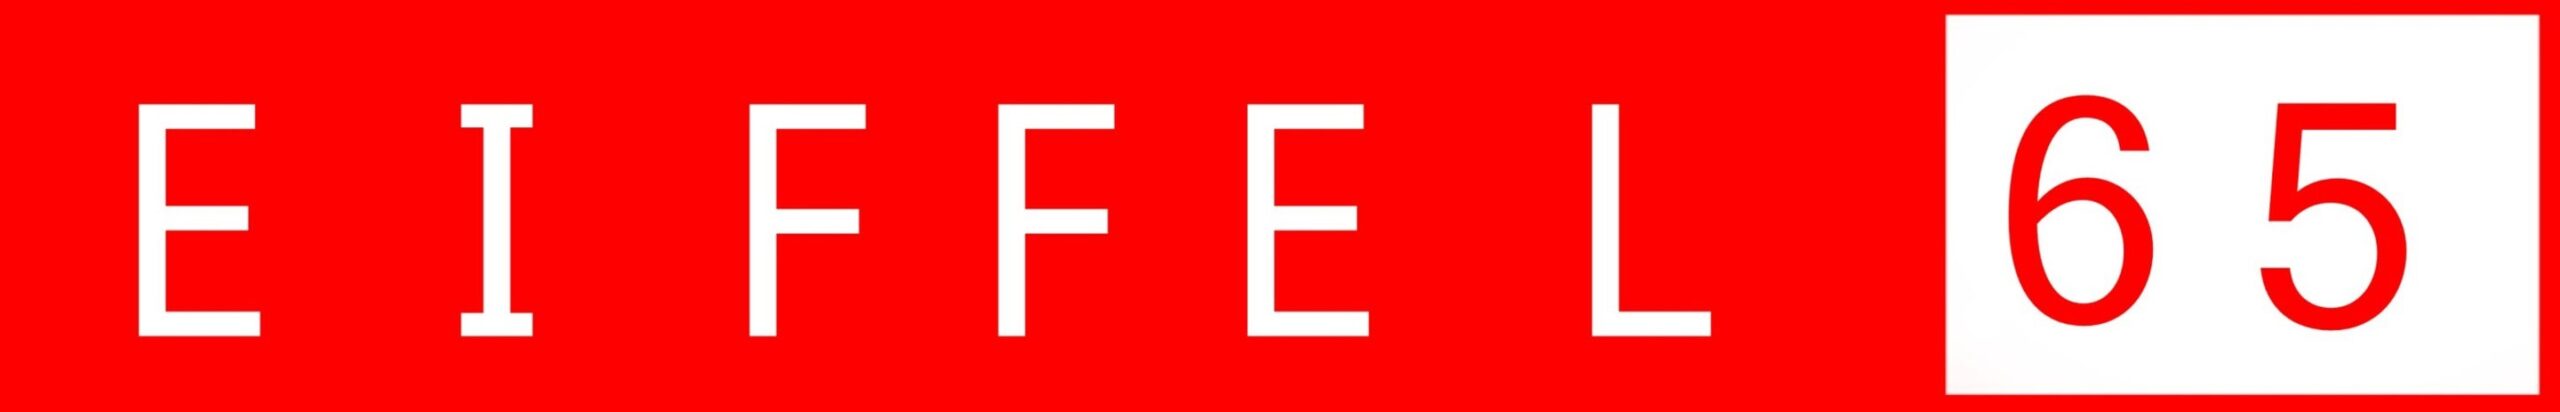 Eiffel 65 Logo